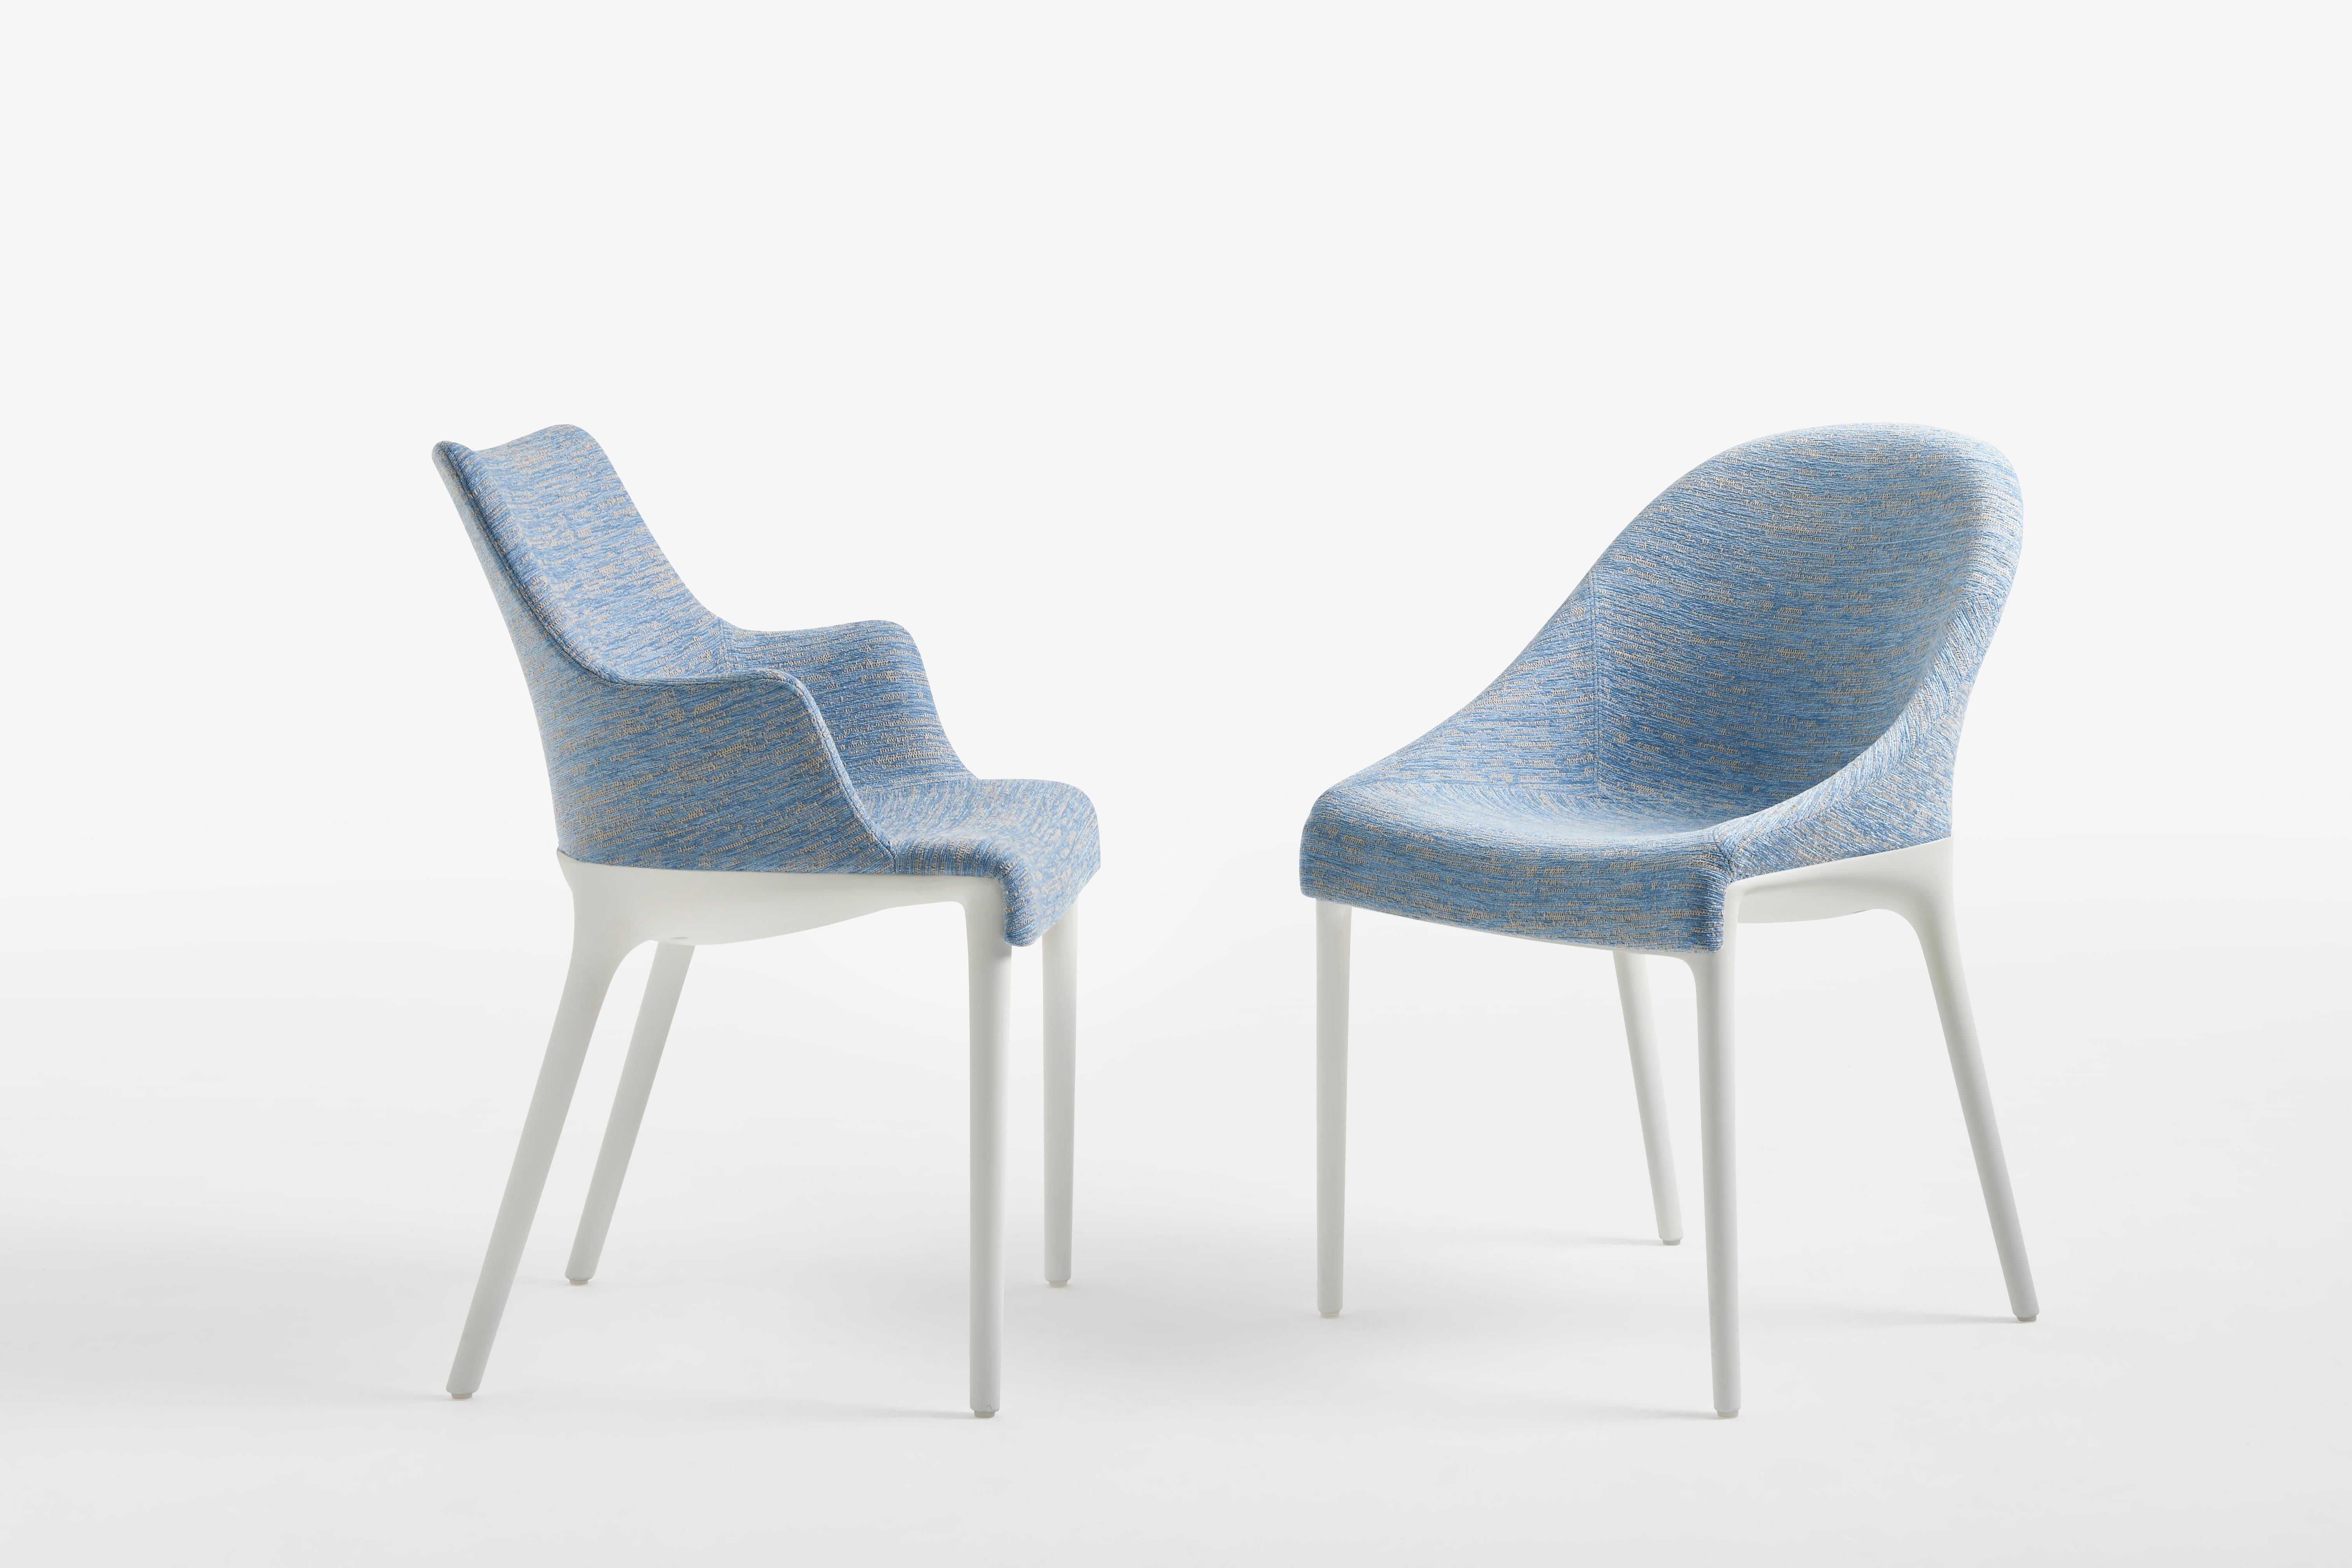 Eleganz und ihr diskreter Charme. Philippe Starck hat die wesentlichen Linien des italienischen Stils neu durchdacht und einen zeitlosen Stuhl geschaffen, der die Welt der Haute Couture mit dem Bon Ton verbindet. Charakteristische Merkmale: